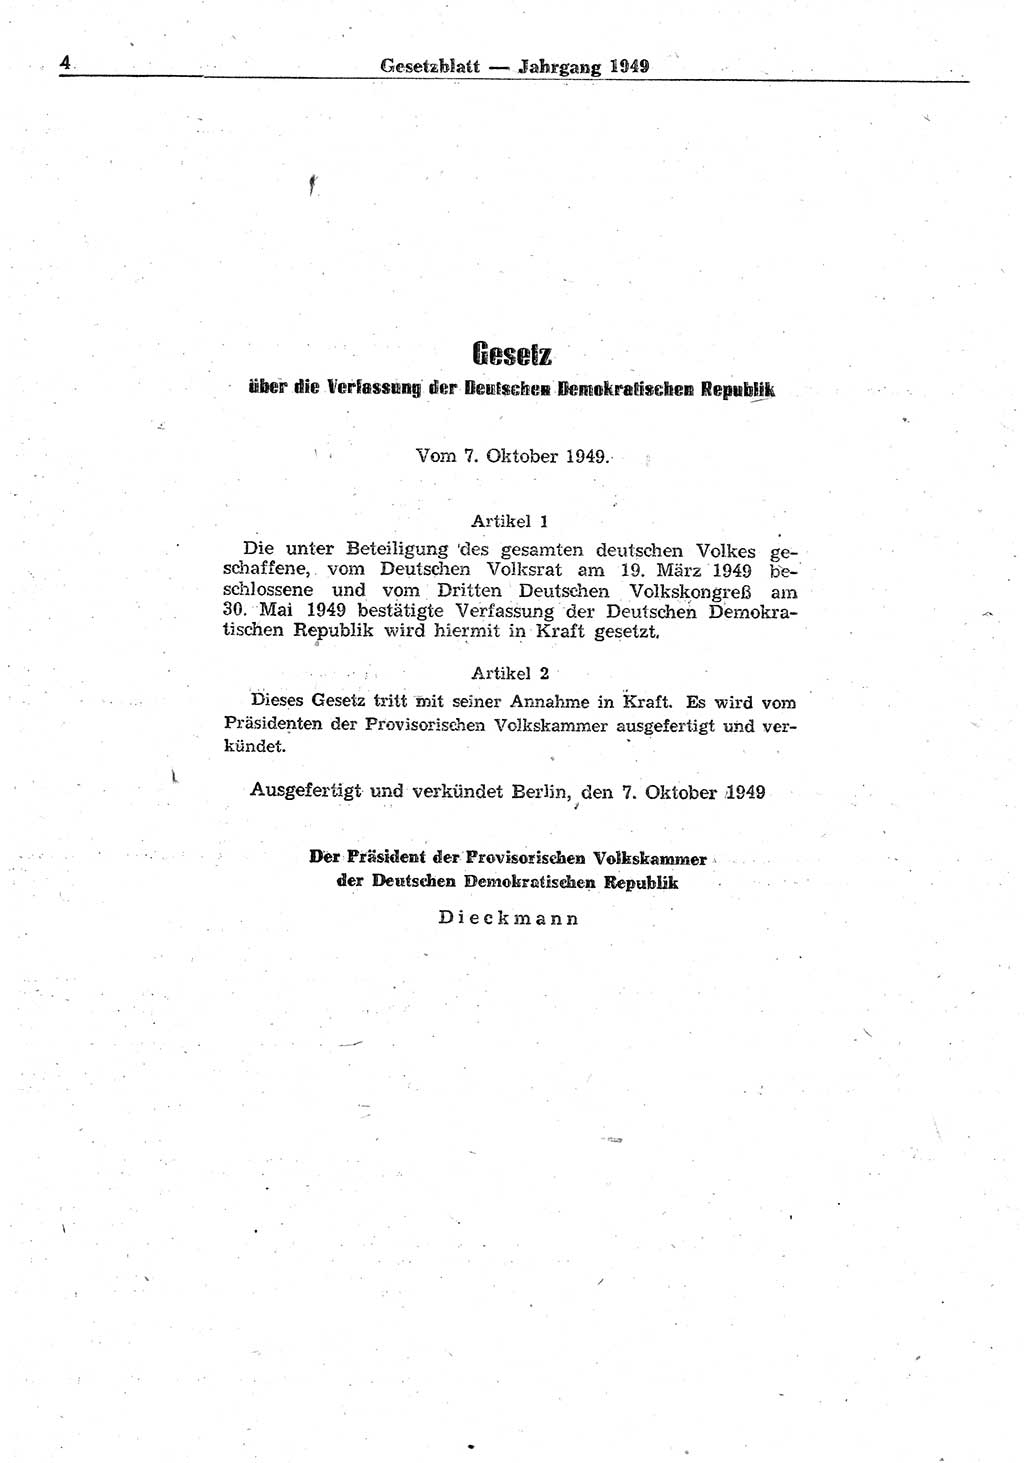 Gesetzblatt (GBl.) der Deutschen Demokratischen Republik (DDR) 1949, Seite 4 (GBl. DDR 1949, S. 4)